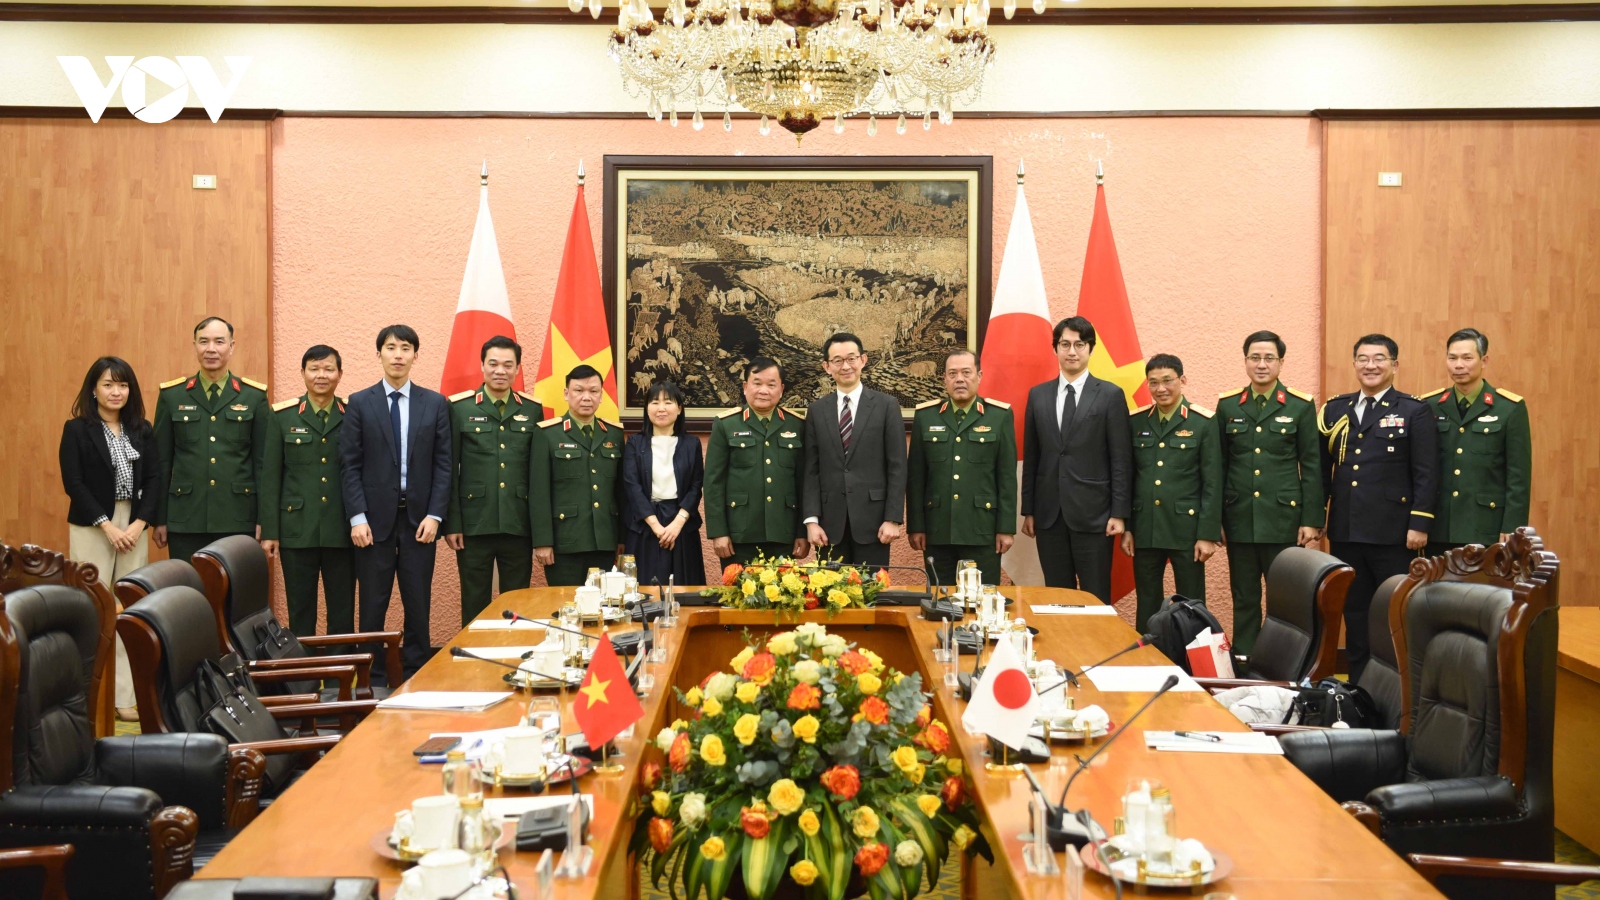 Mở ra cơ hội hợp tác giữa Bộ Quốc phòng hai nước Việt Nam và Nhật Bản